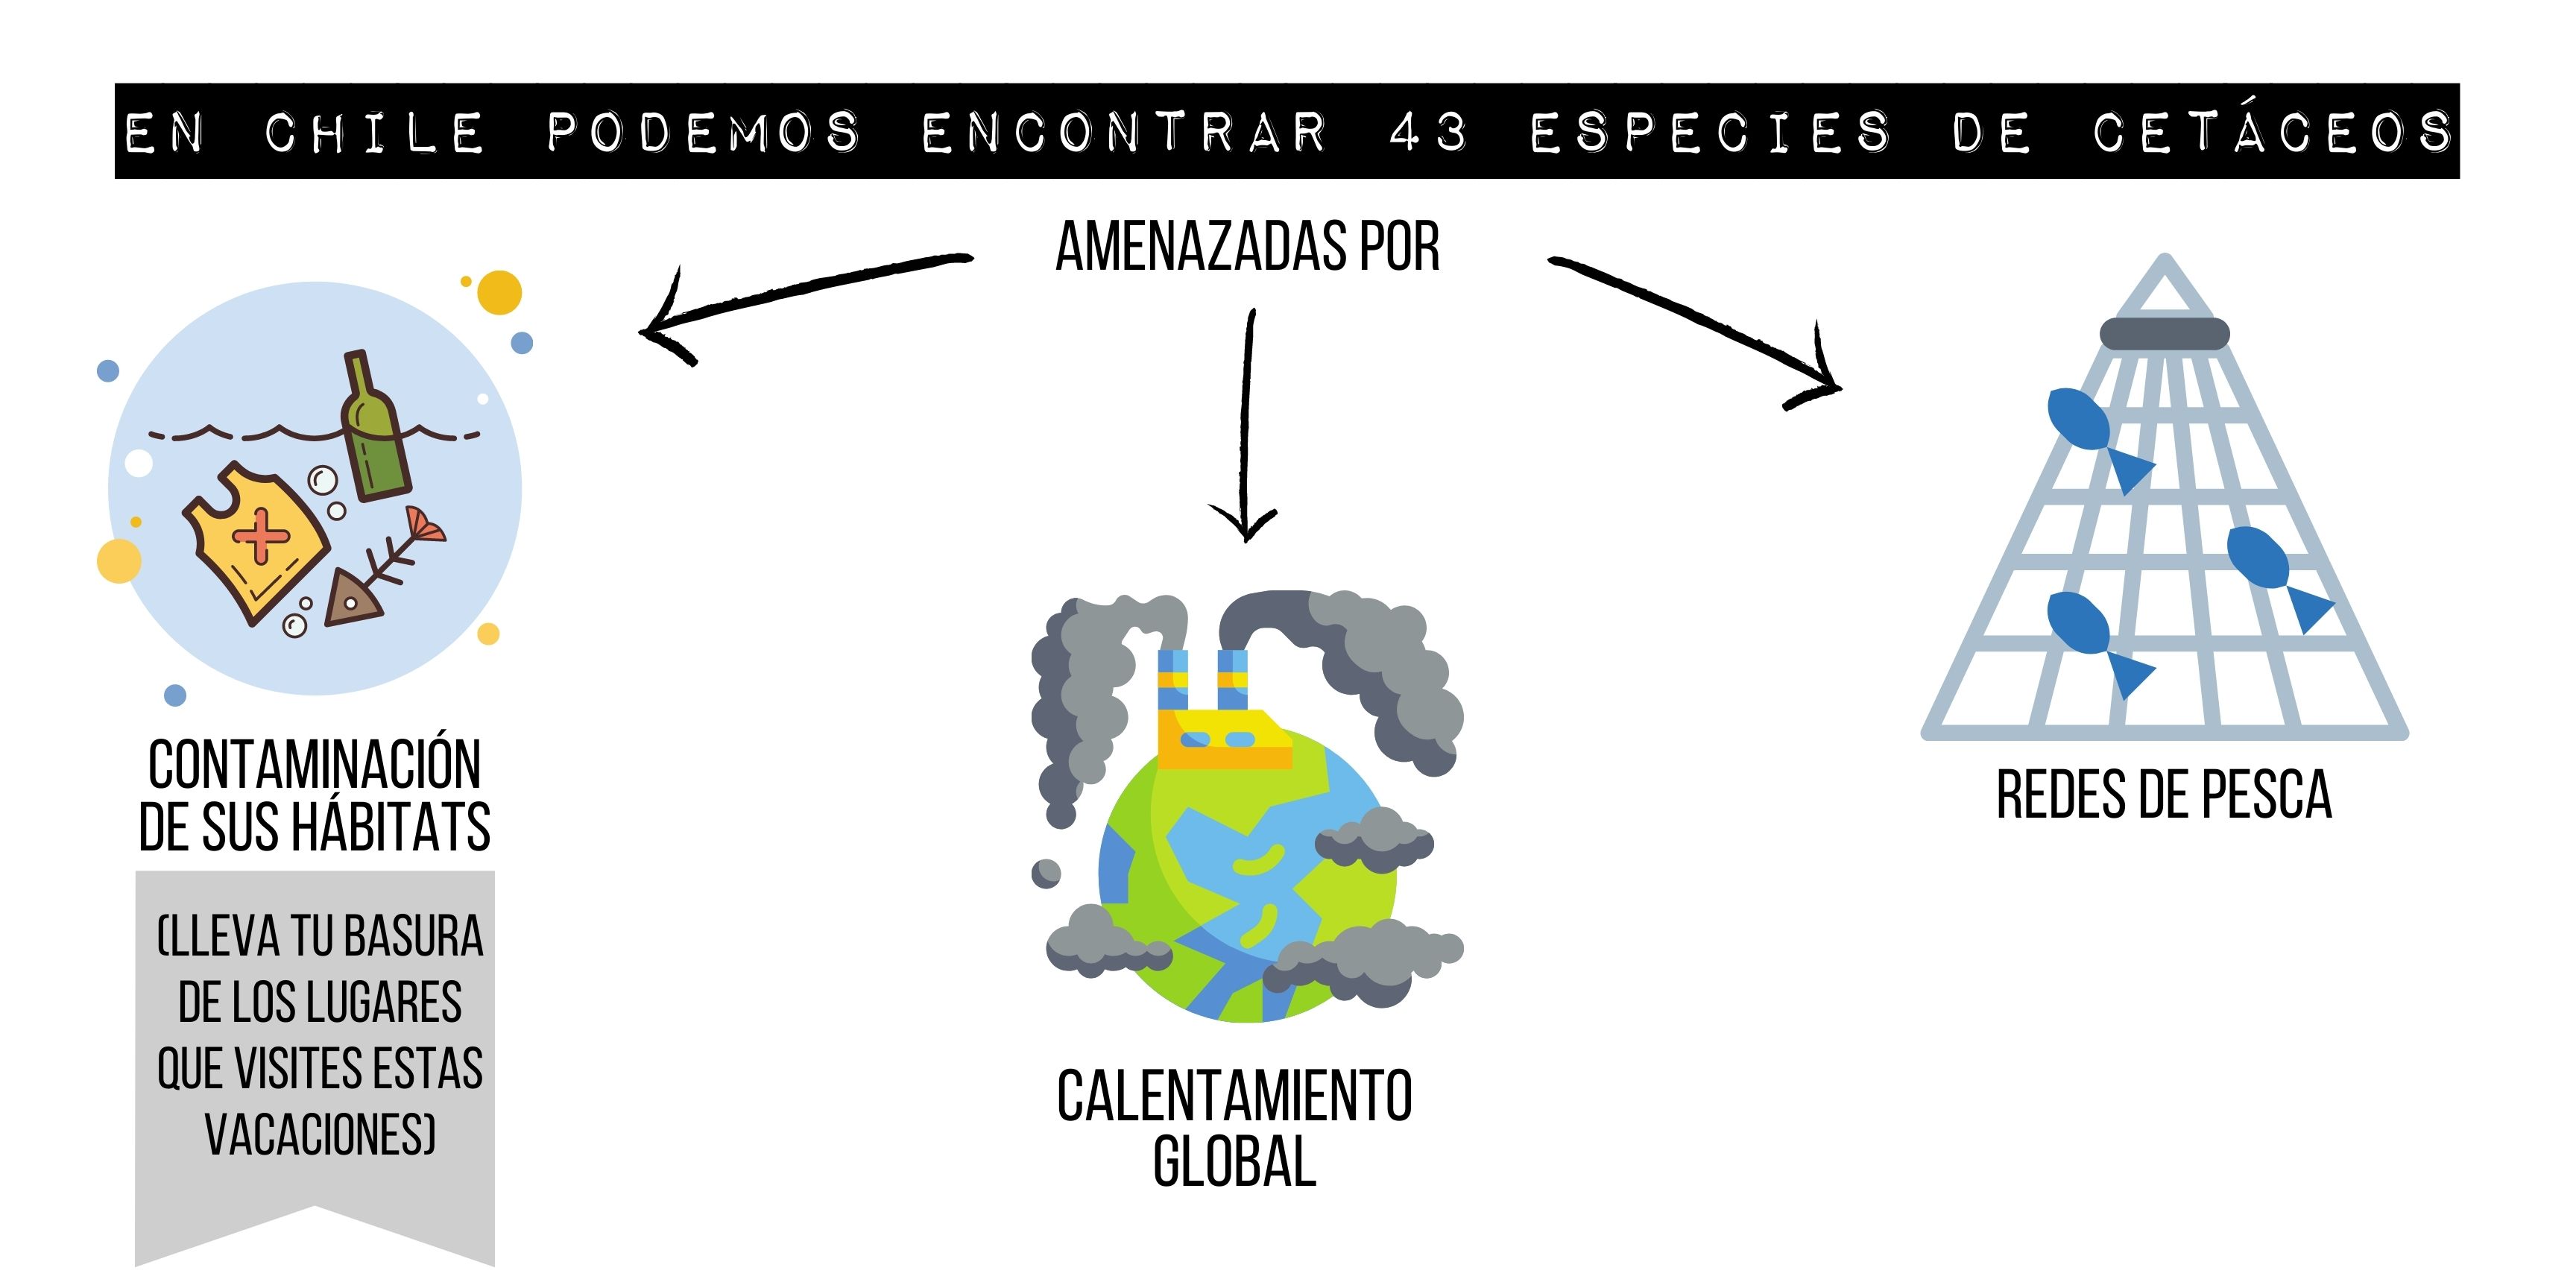 En Chile podemos encontrar 43 especies amenzadas por contaminación, pesca y calentamiento global